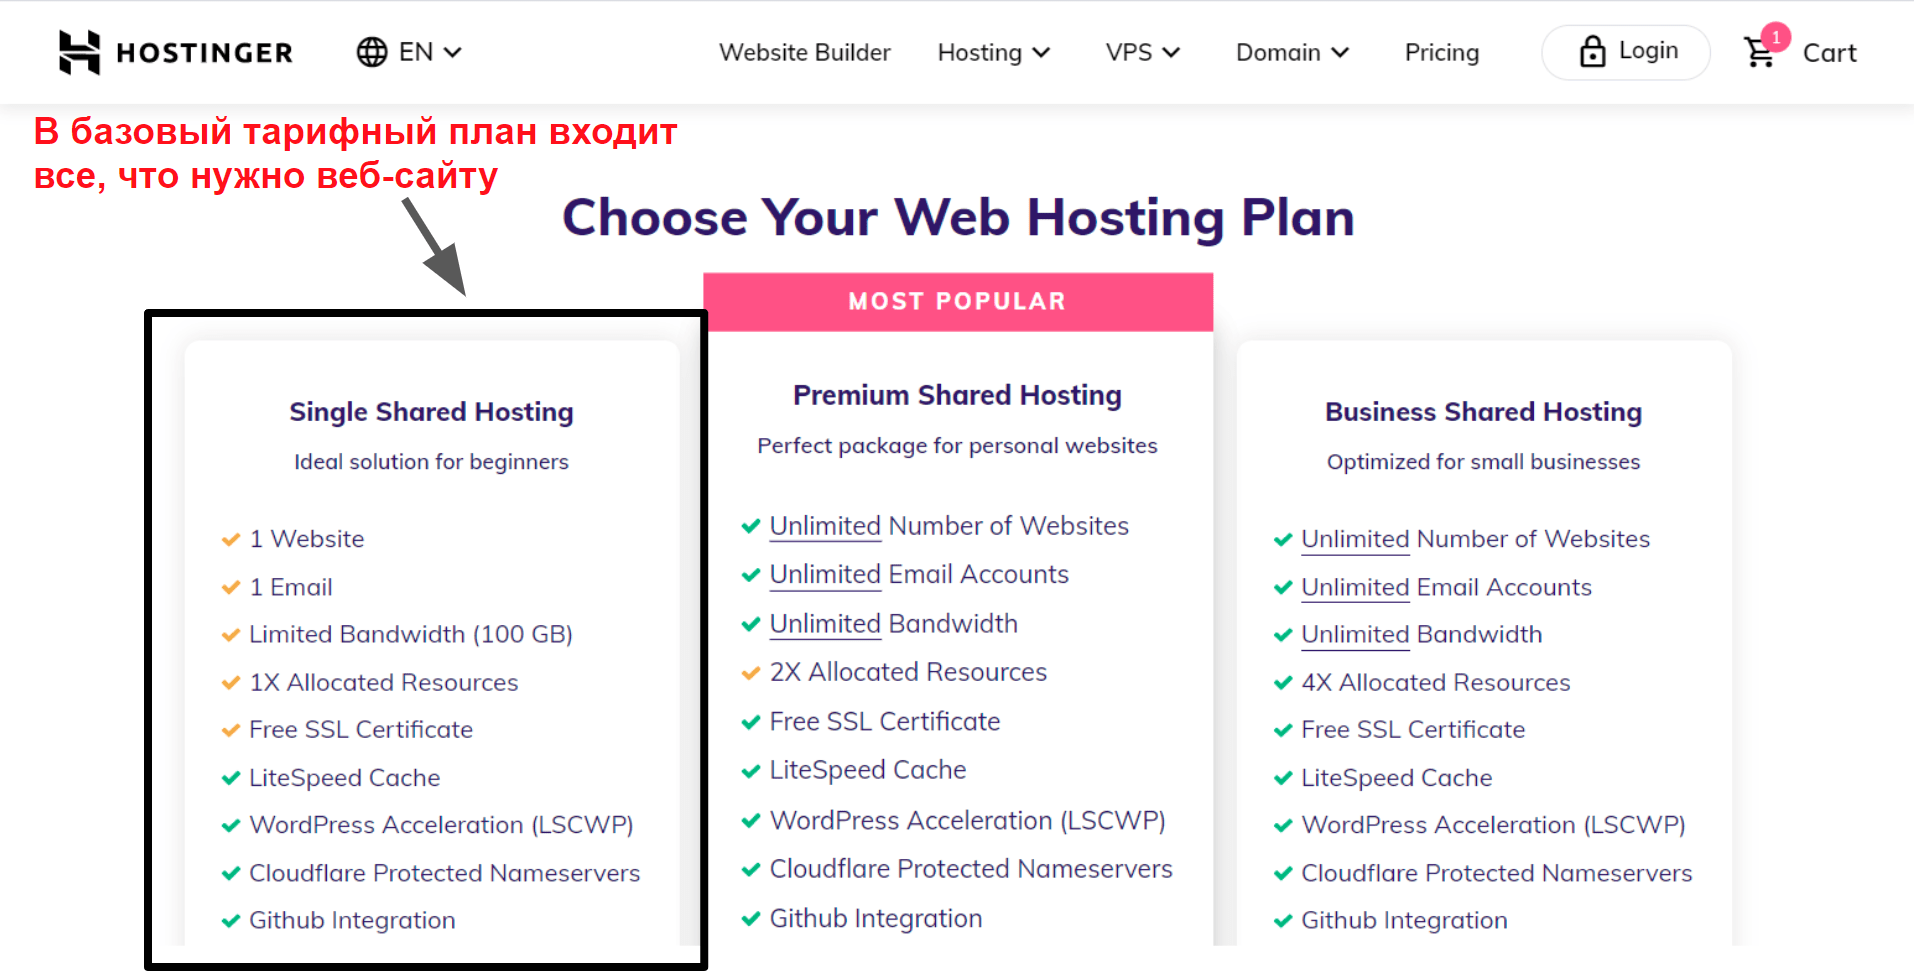 hosting plan features_RU 1